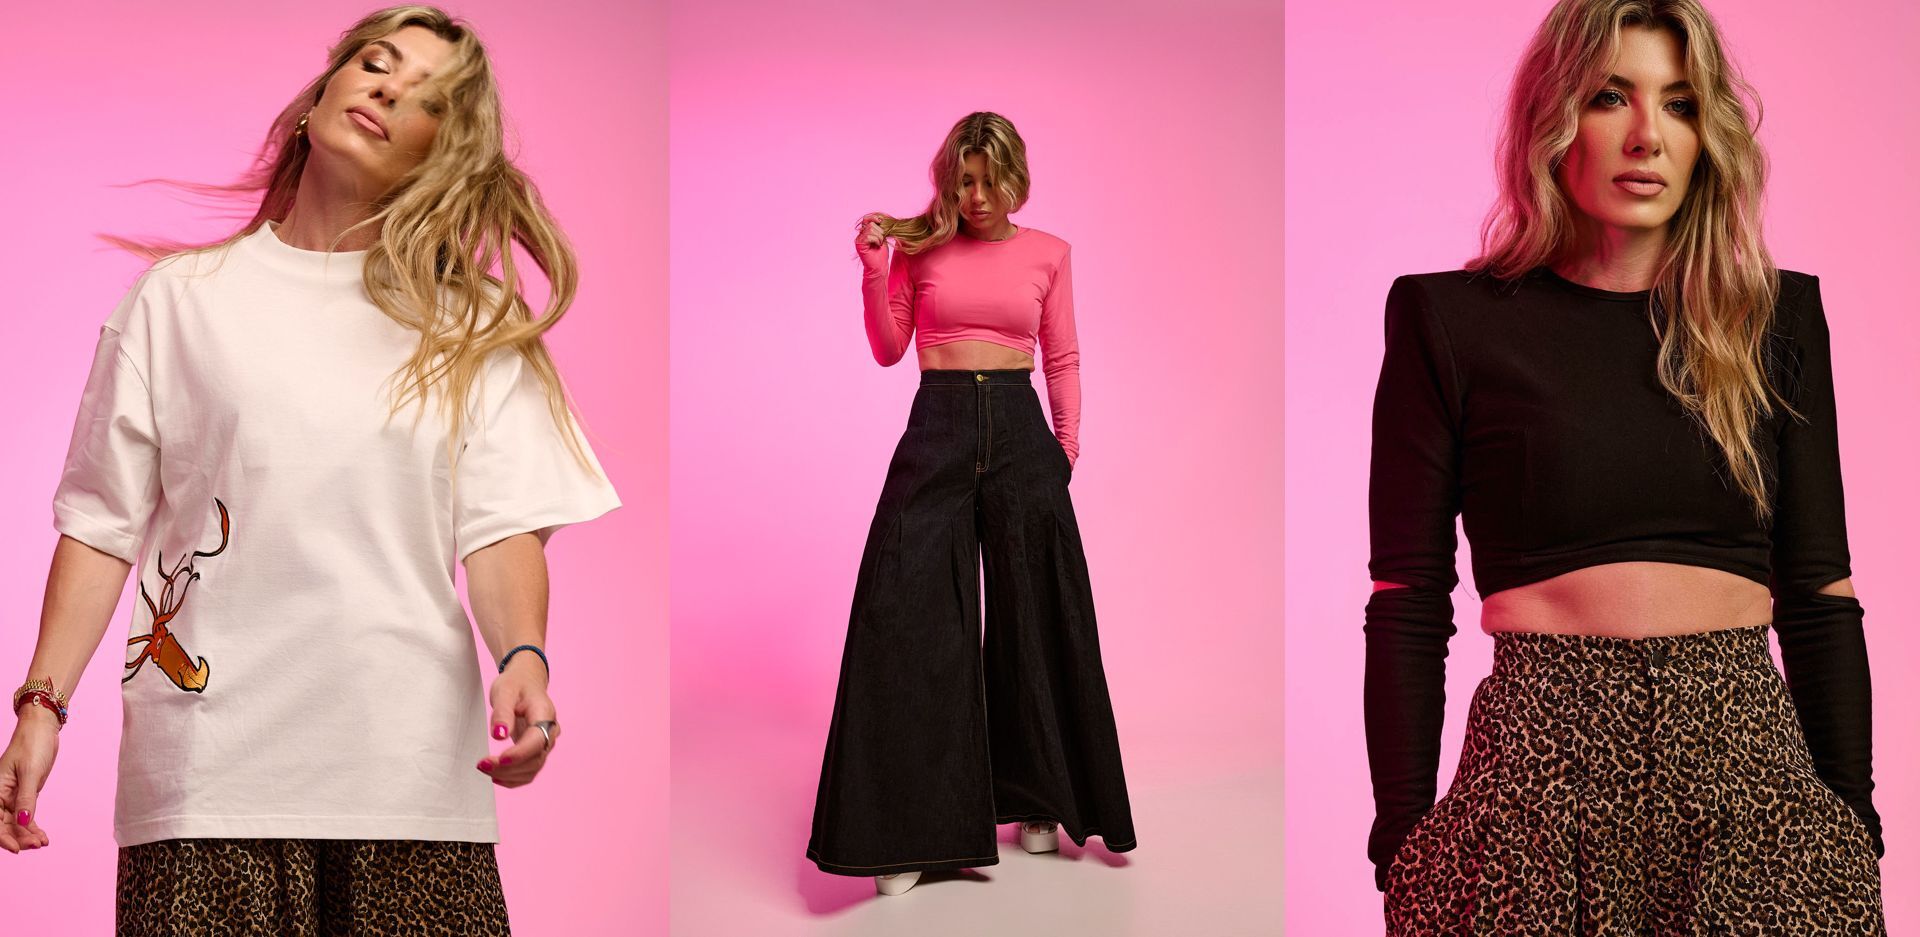 HAAV: Η Βανέσσα Χατζηγιαννάκη σχεδιάζει ρούχα για ανθρώπους που διεκδικούν καθημερινά την καλύτερη εκδοχή του εαυτού τους